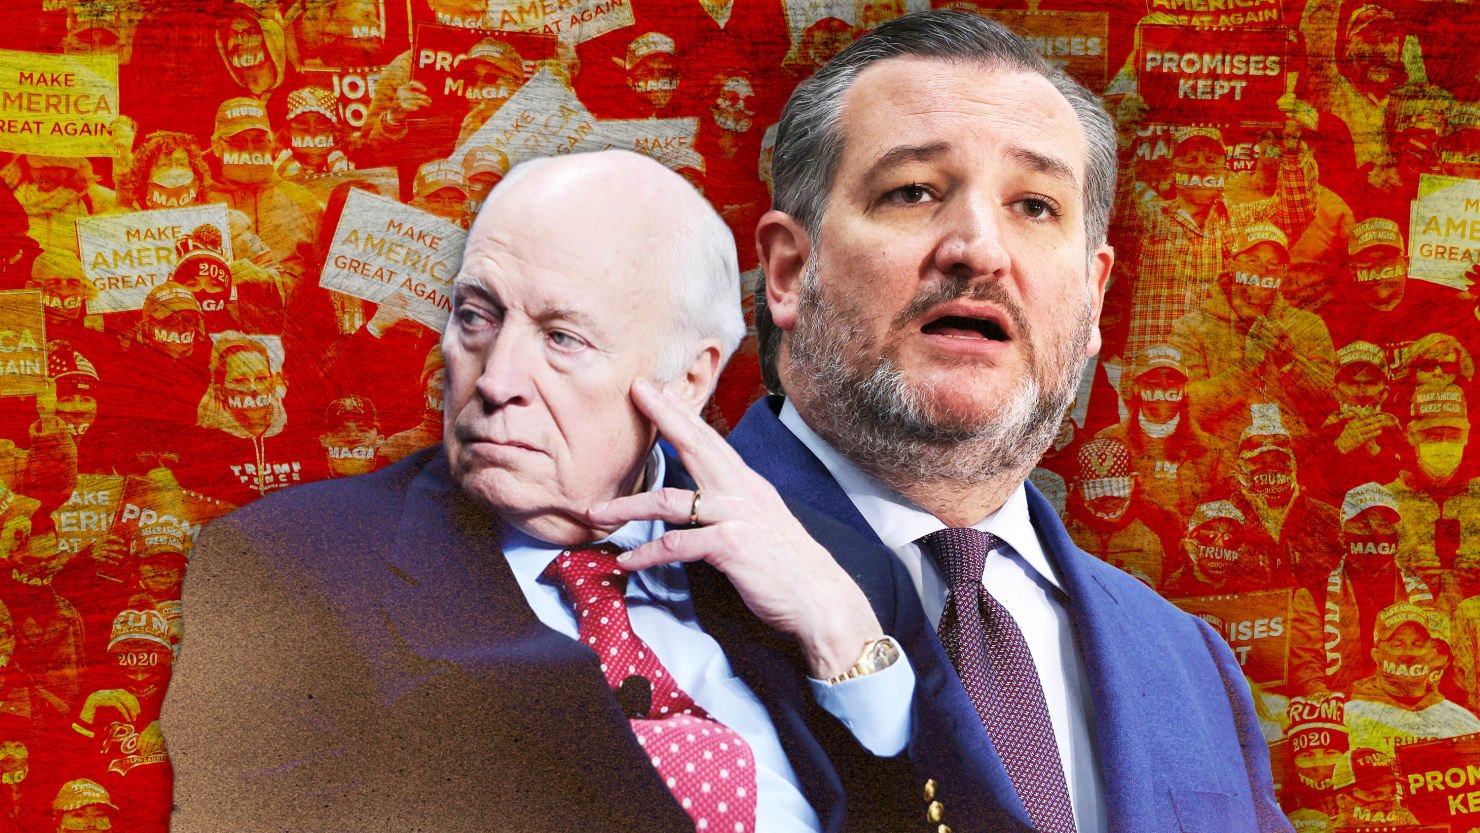 Los estúpidos trucos de Ted Cruz y Dick Cheney con Trump